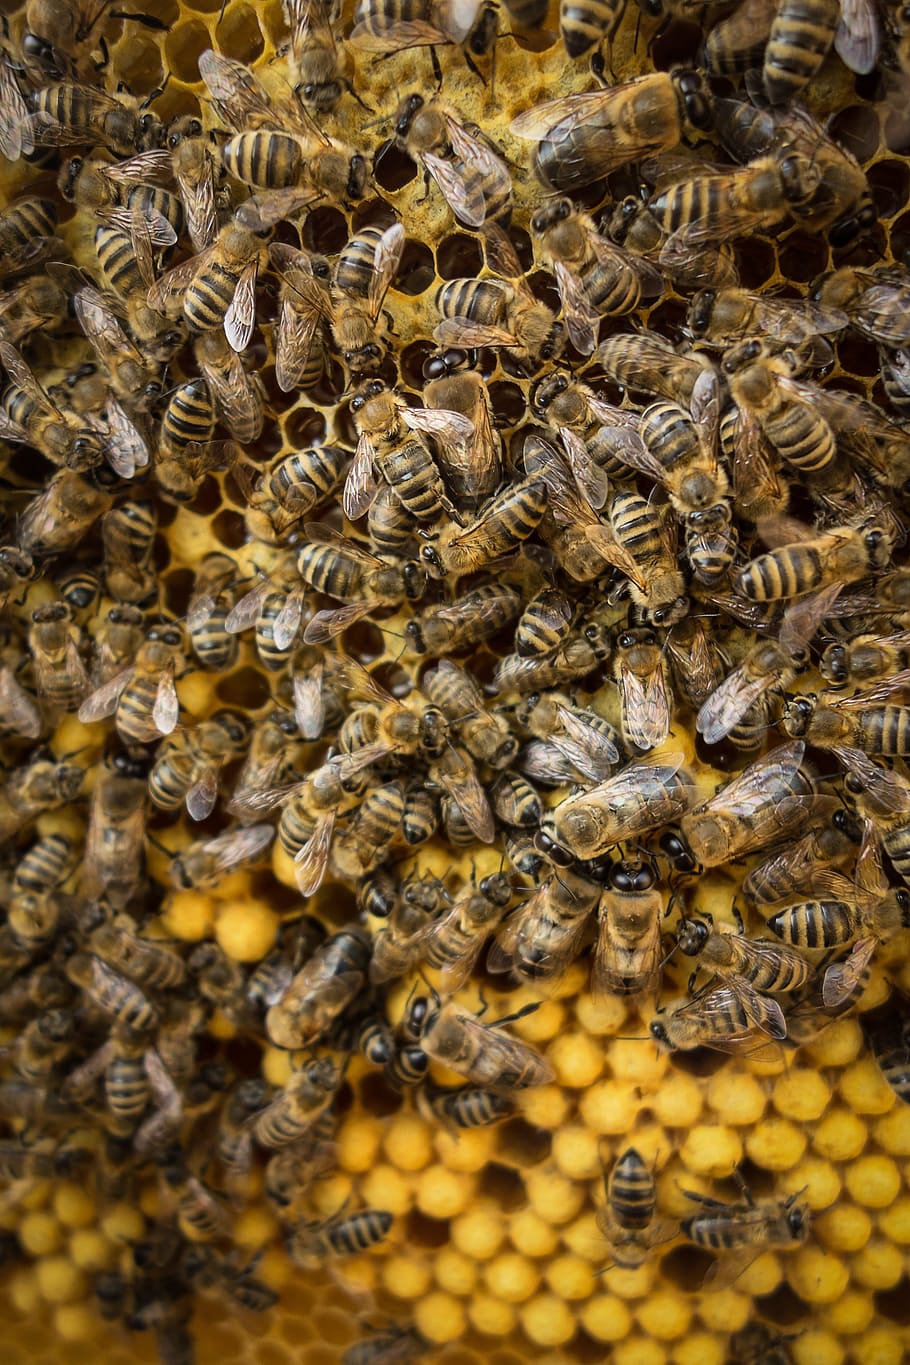 lebah, lilin, sarang lebah, serangga, pemeliharaan lebah, lebah madu, invertebrata, sekelompok hewan, kelompok besar hewan, hewan di alam liar